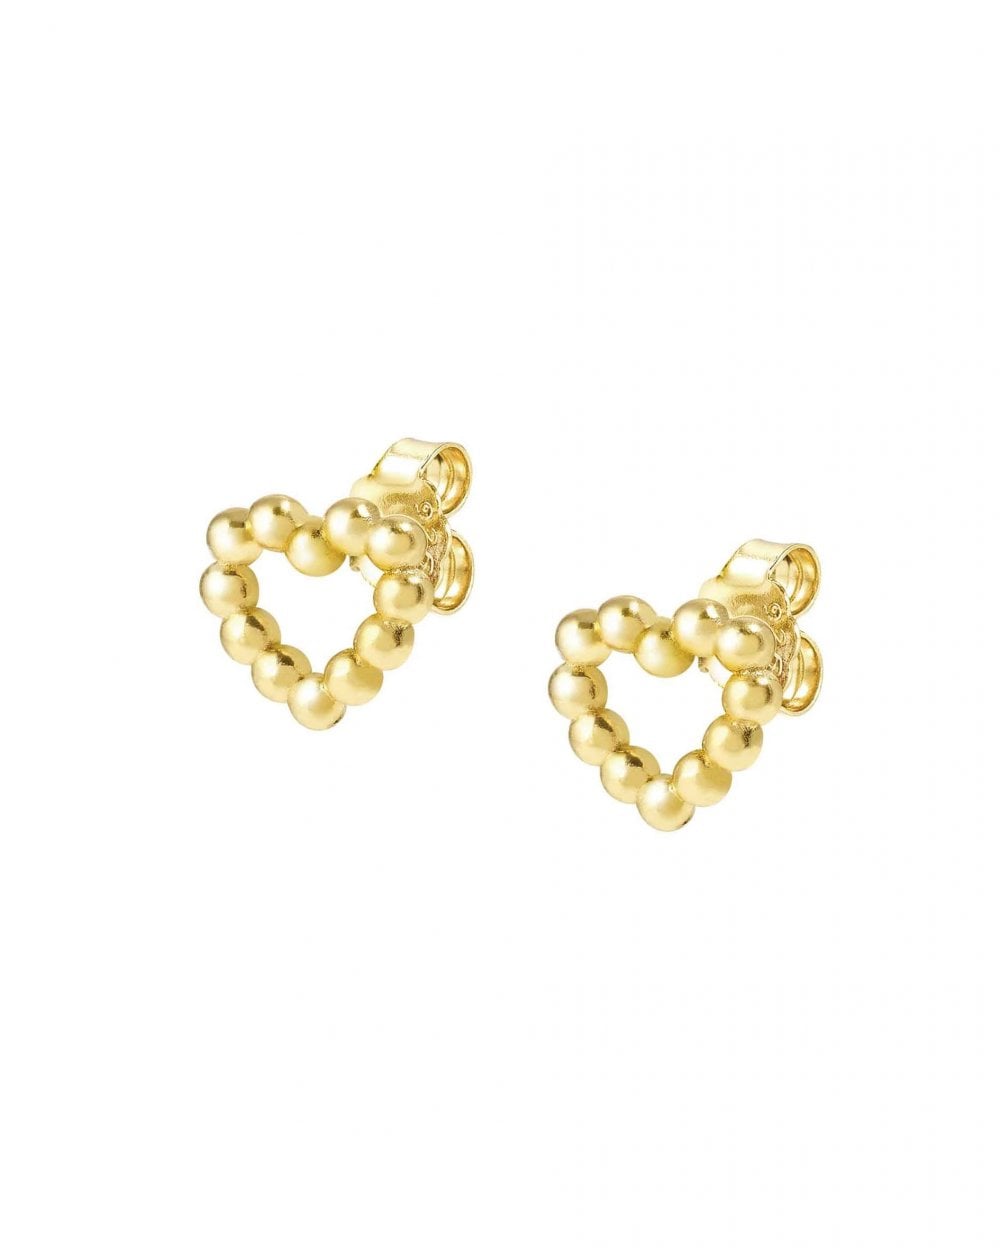 LOVECLOUD Earrings, Yellow Gold Heart